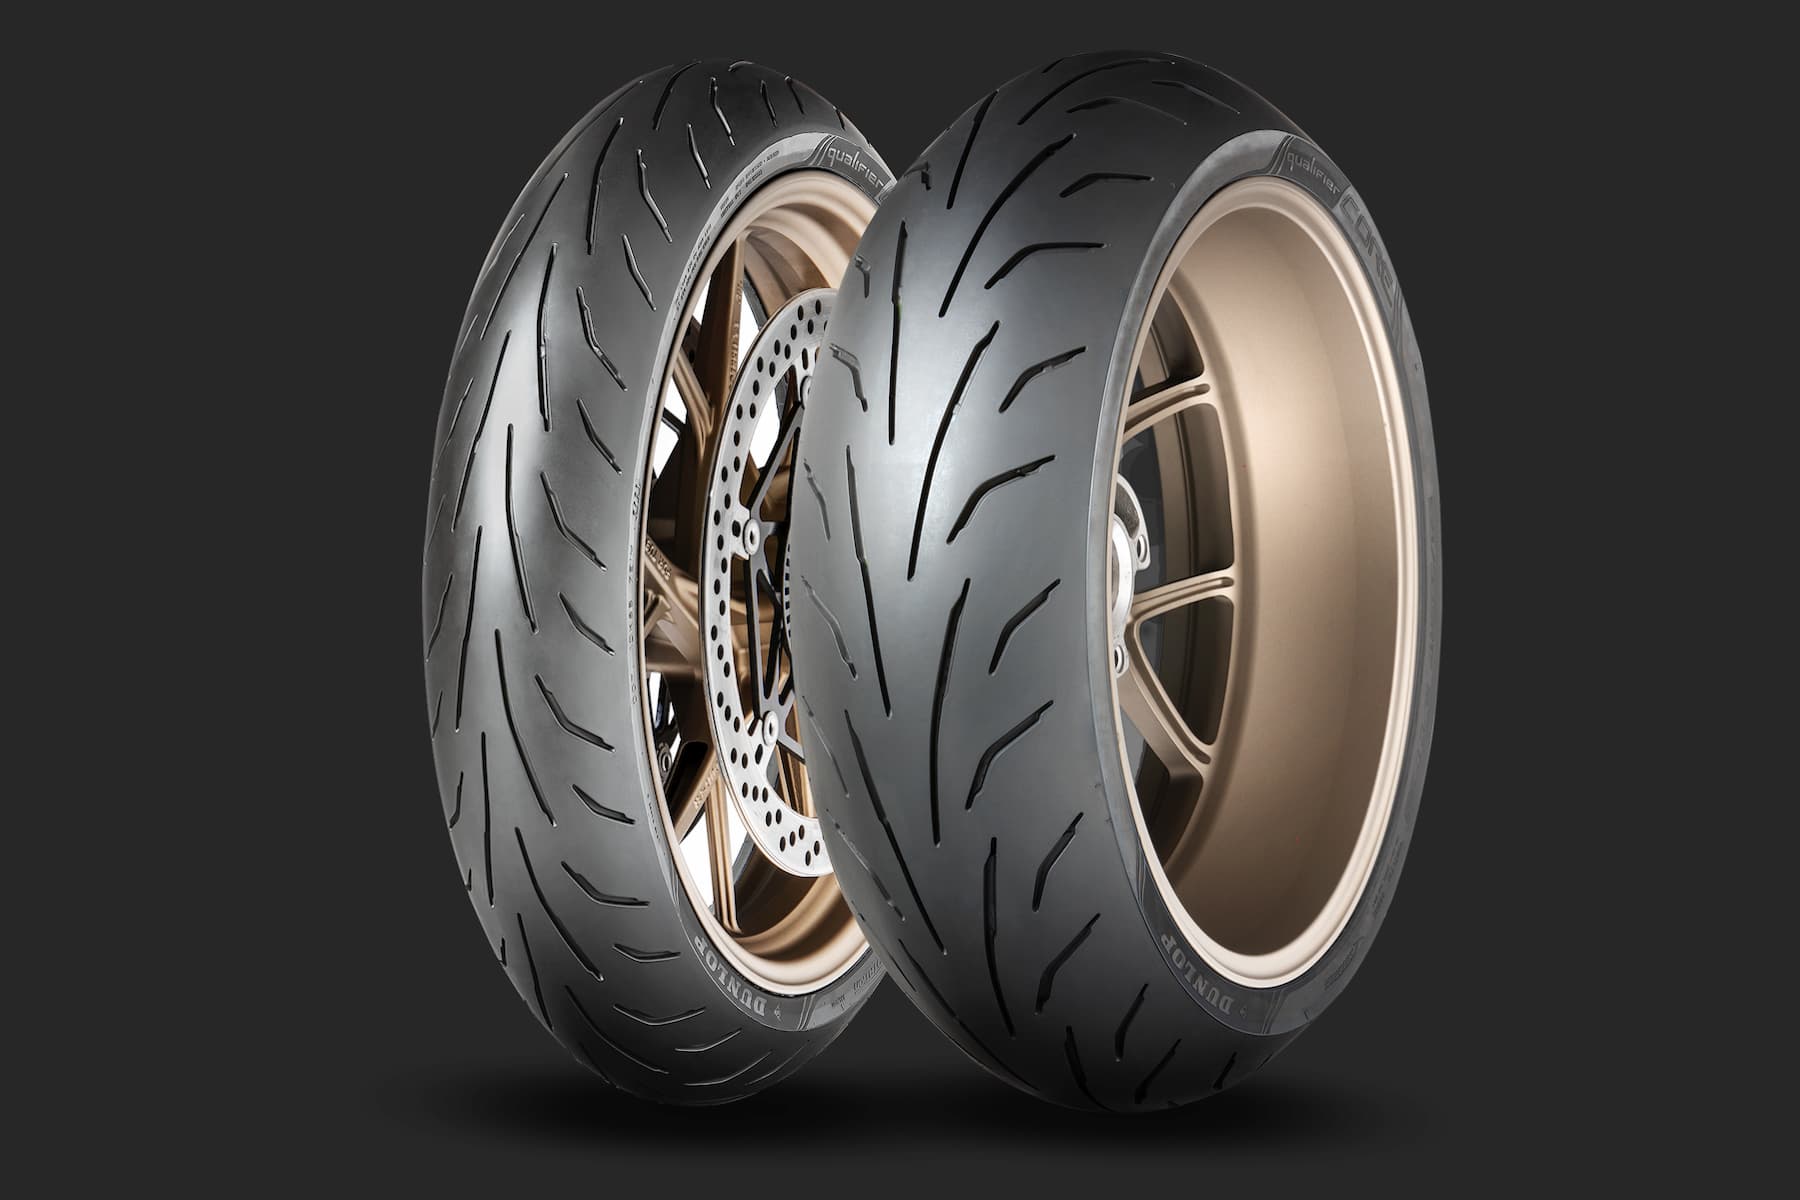 Nouveauté pneu sport : Dunlop Qualifier CORE - Moto-Station